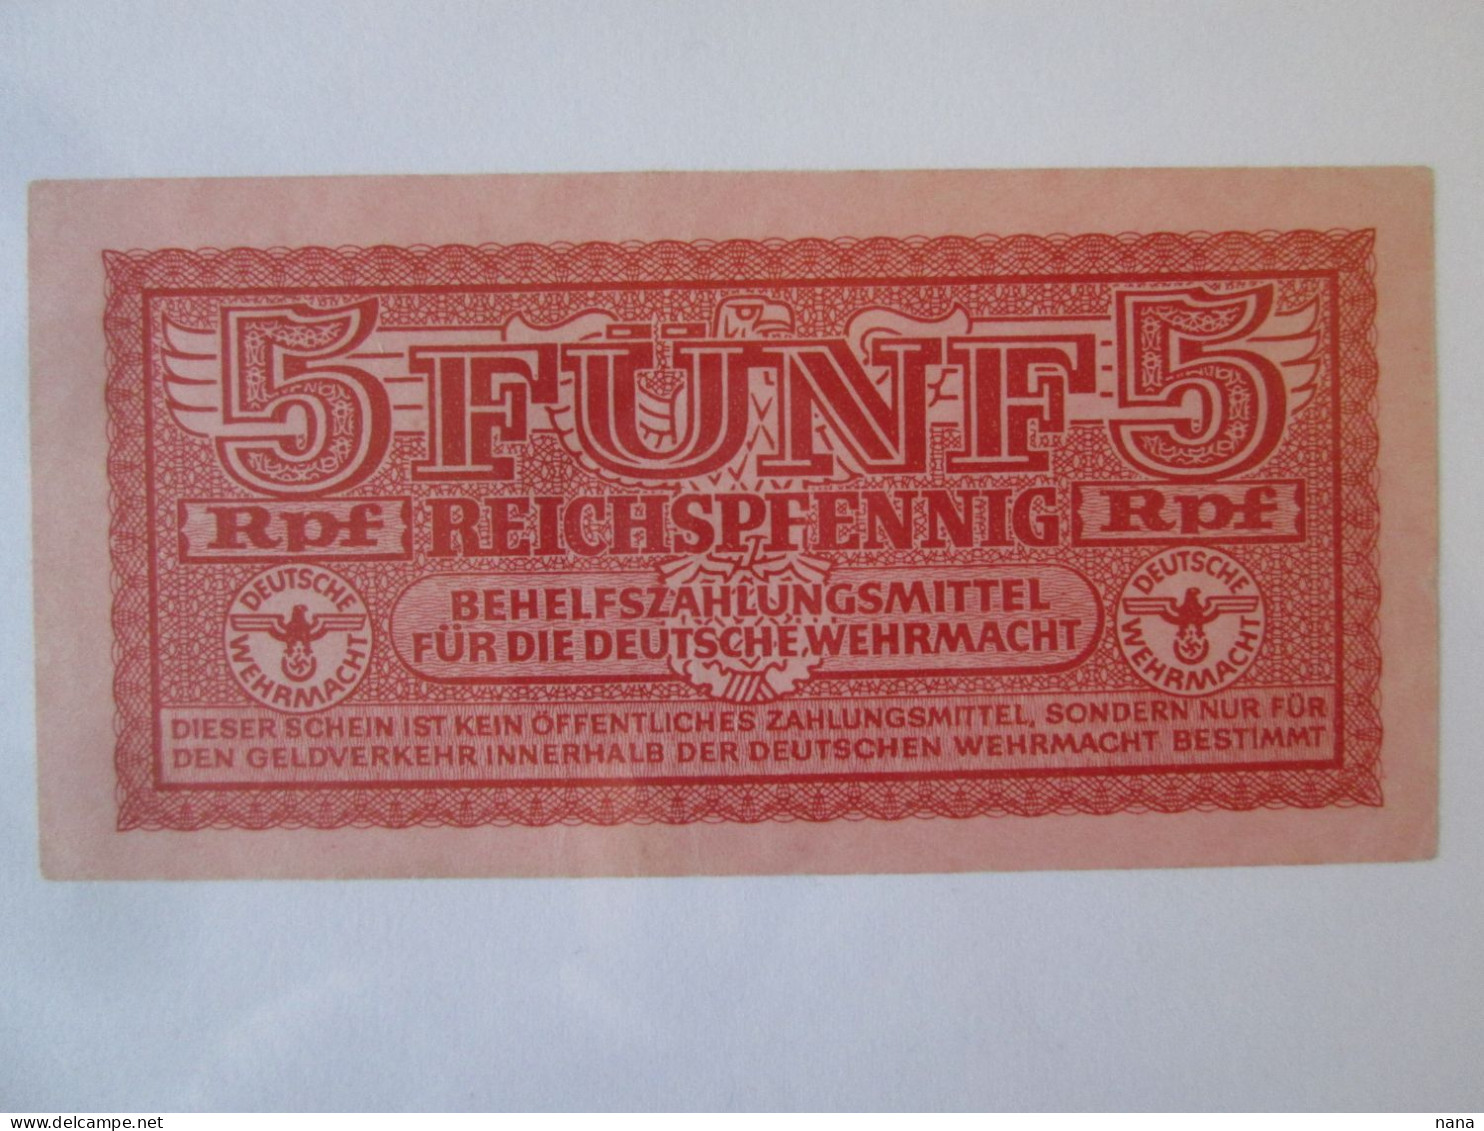 Occupied German Territories WW2/Greece 5 Reichspfennig 1944 Banknote UNC See Pictures - 2. WK